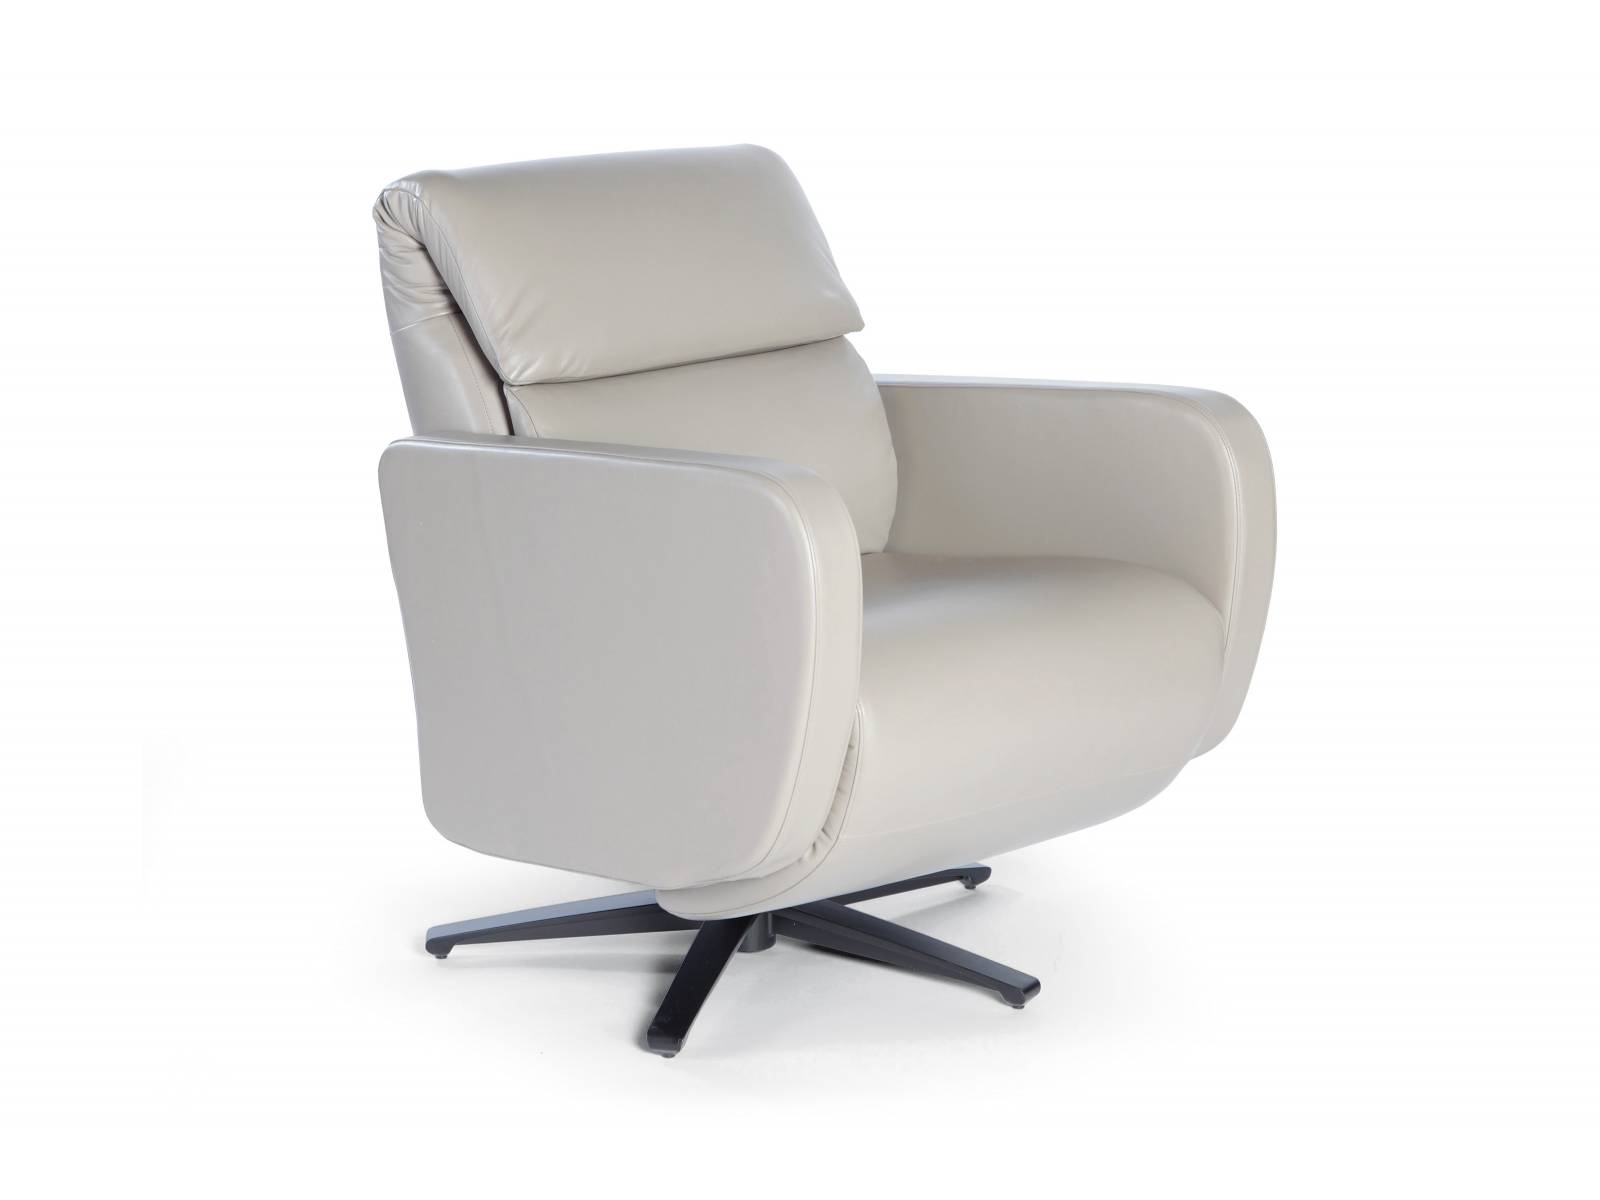 «FLUX» ist ein Sessel, der per Knopfdruck Rückenlehne und Fussteil ausfährt und so durchaus zu einem Nickerchen einlädt. Sitztiefe, Rückenhöhe sowie Breite des Sessels können den individuellen Bedürfnissen angepasst werden. Strässle.